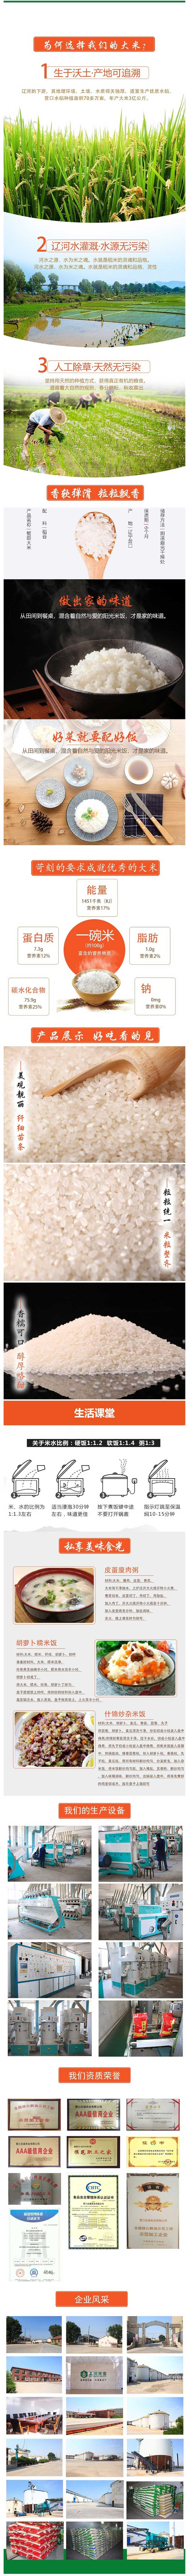 营实-风吹稻香-圆粒米-珍珠米-东北盐丰米-大米商10Kg20斤.jpg